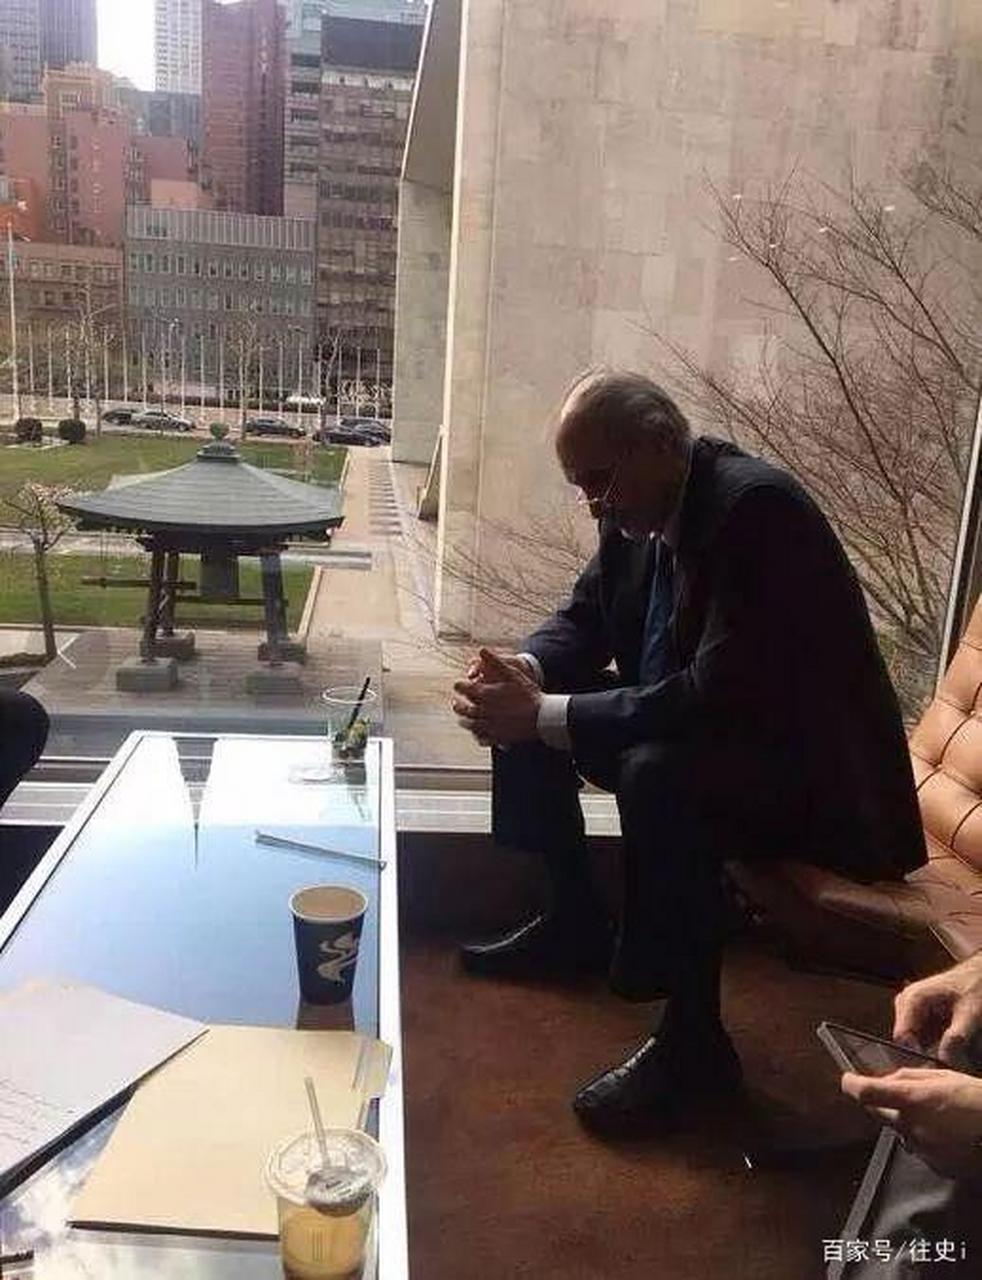 图一是塞尔维亚总统武契奇坐在白宫偌大会议室的小板凳上,这局面像极